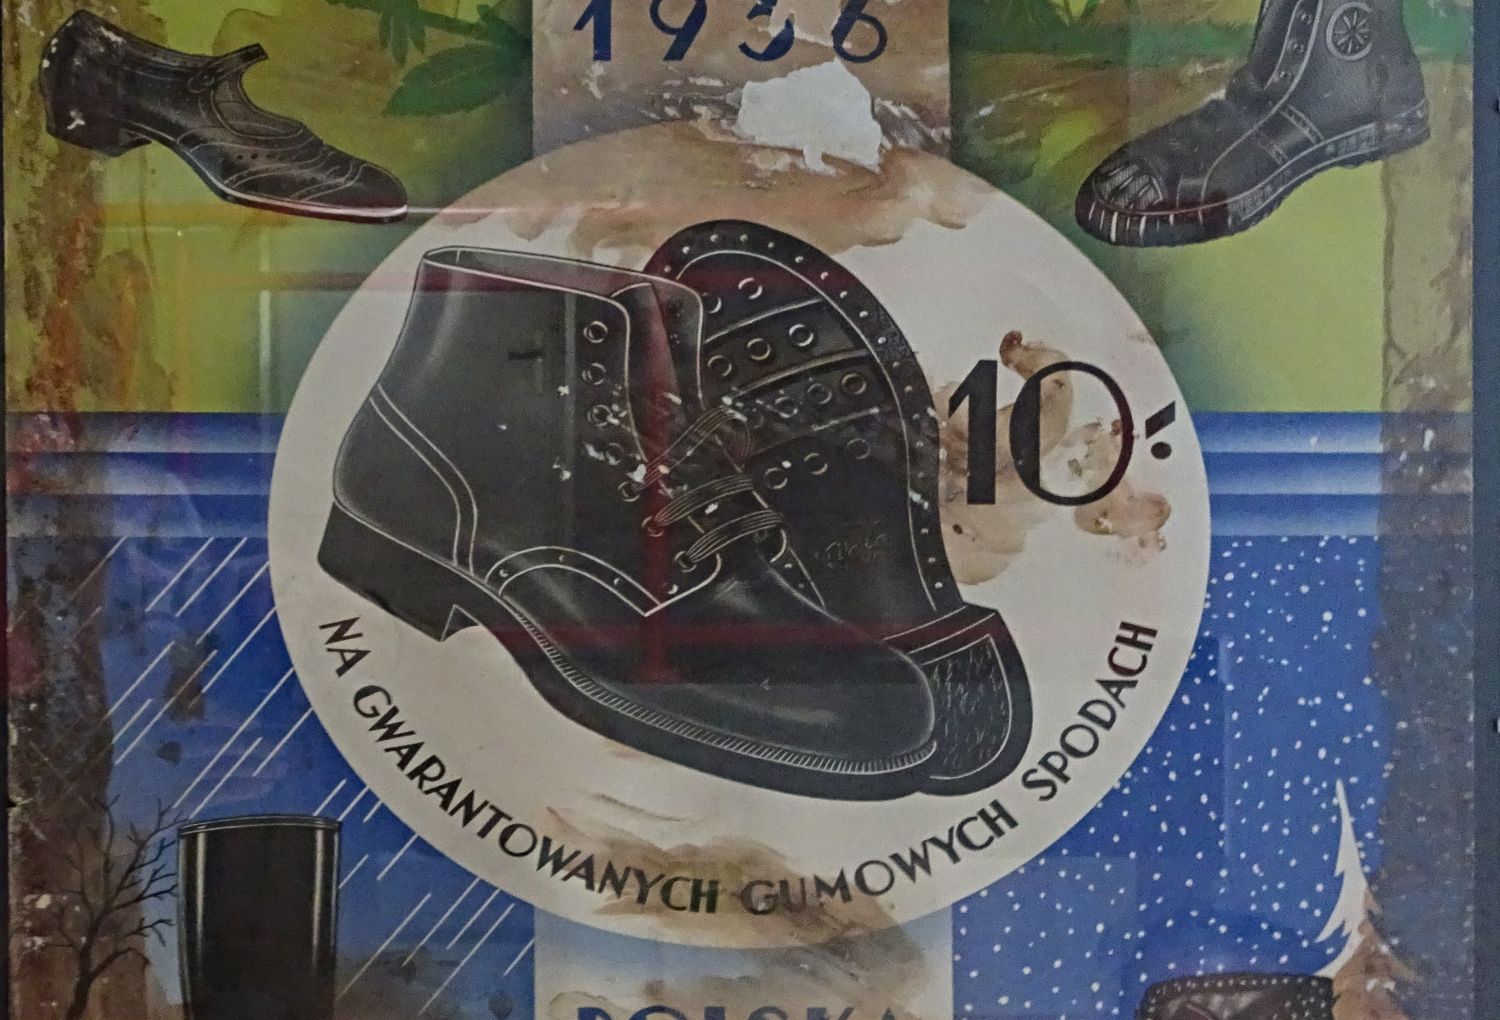 Oude reclameposters van Bata in het schoenenmuseum in het Poolse Chelmek.